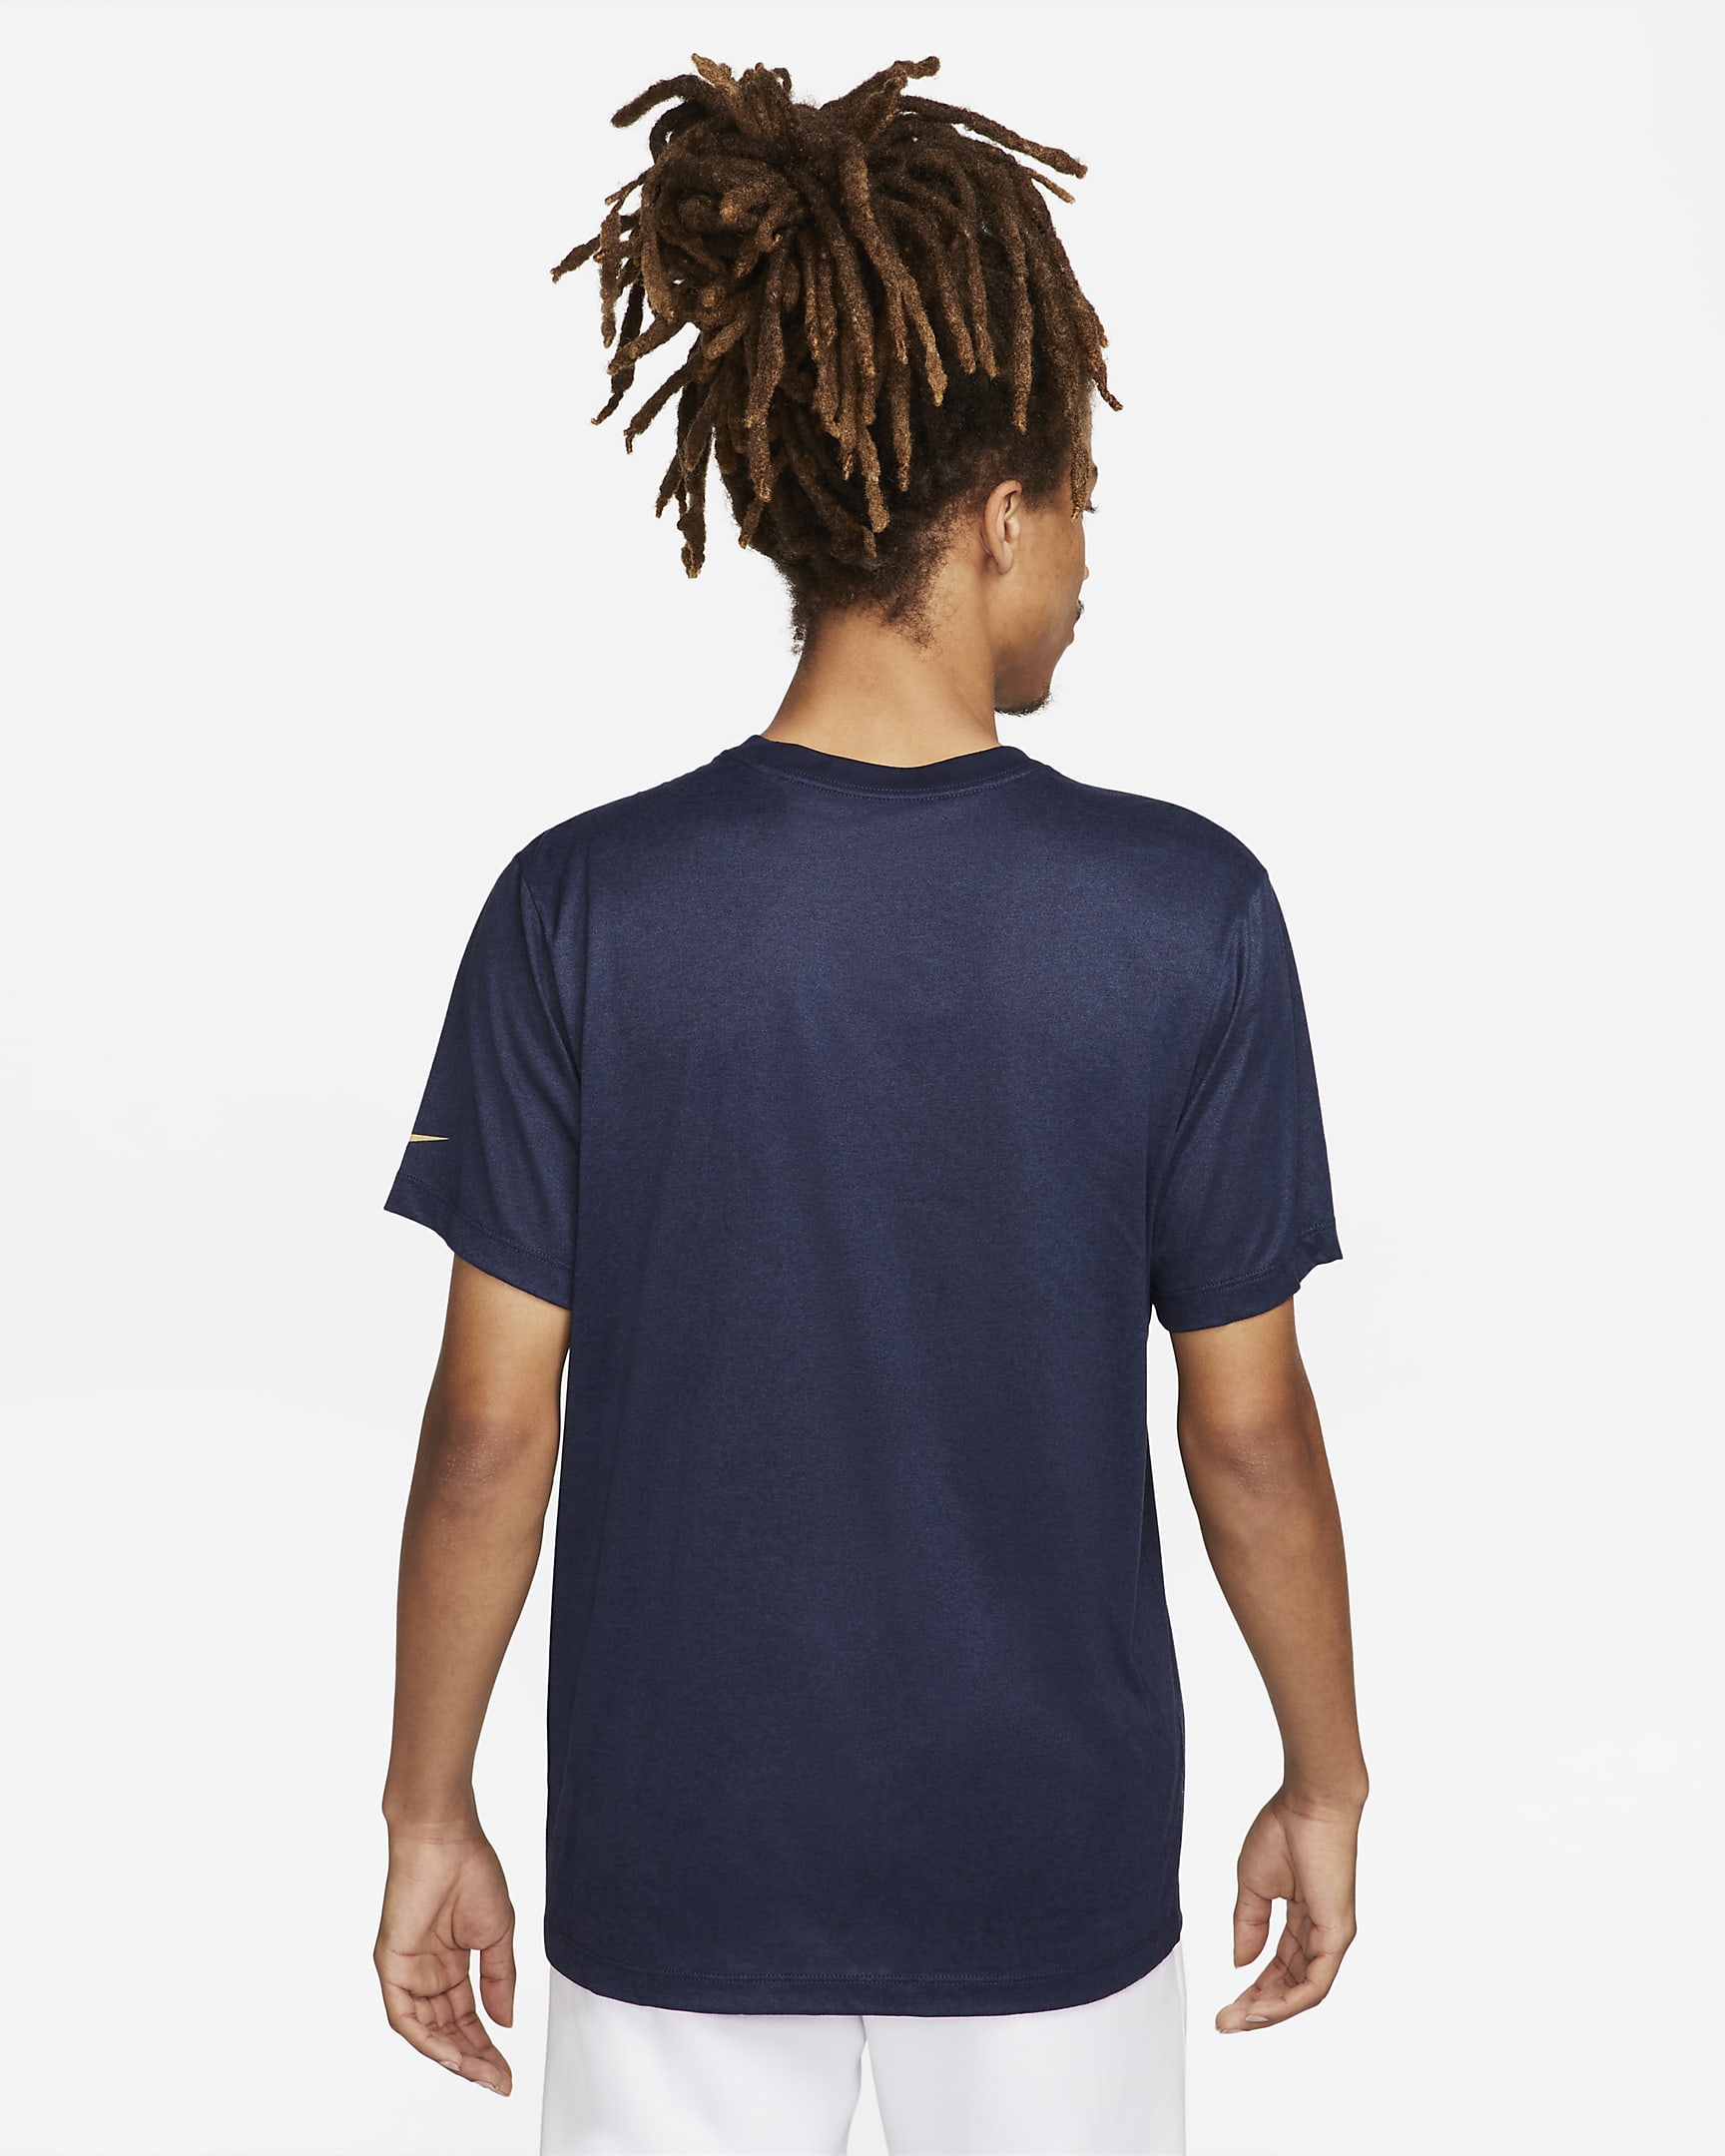 Chelsea FC Men's Nike Soccer T-Shirt. Nike.com